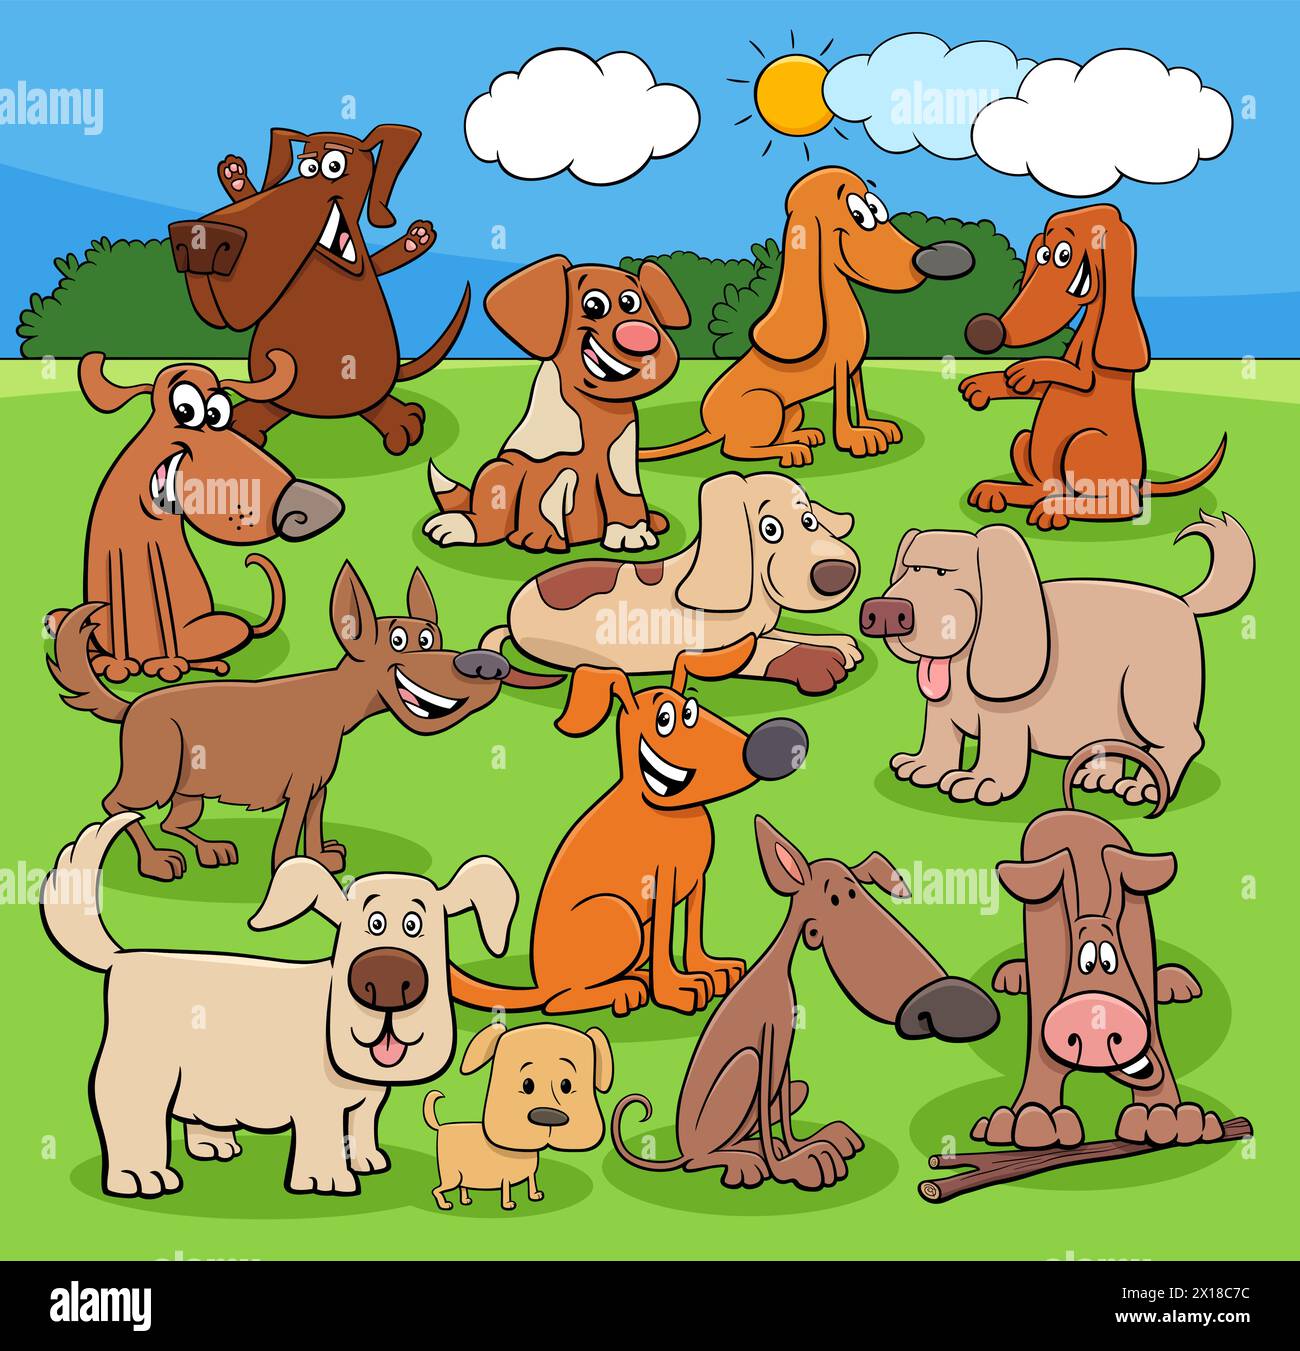 Illustration de dessin animé de chiens ludiques ou de chiots groupe de personnages animaux dans le pré Illustration de Vecteur